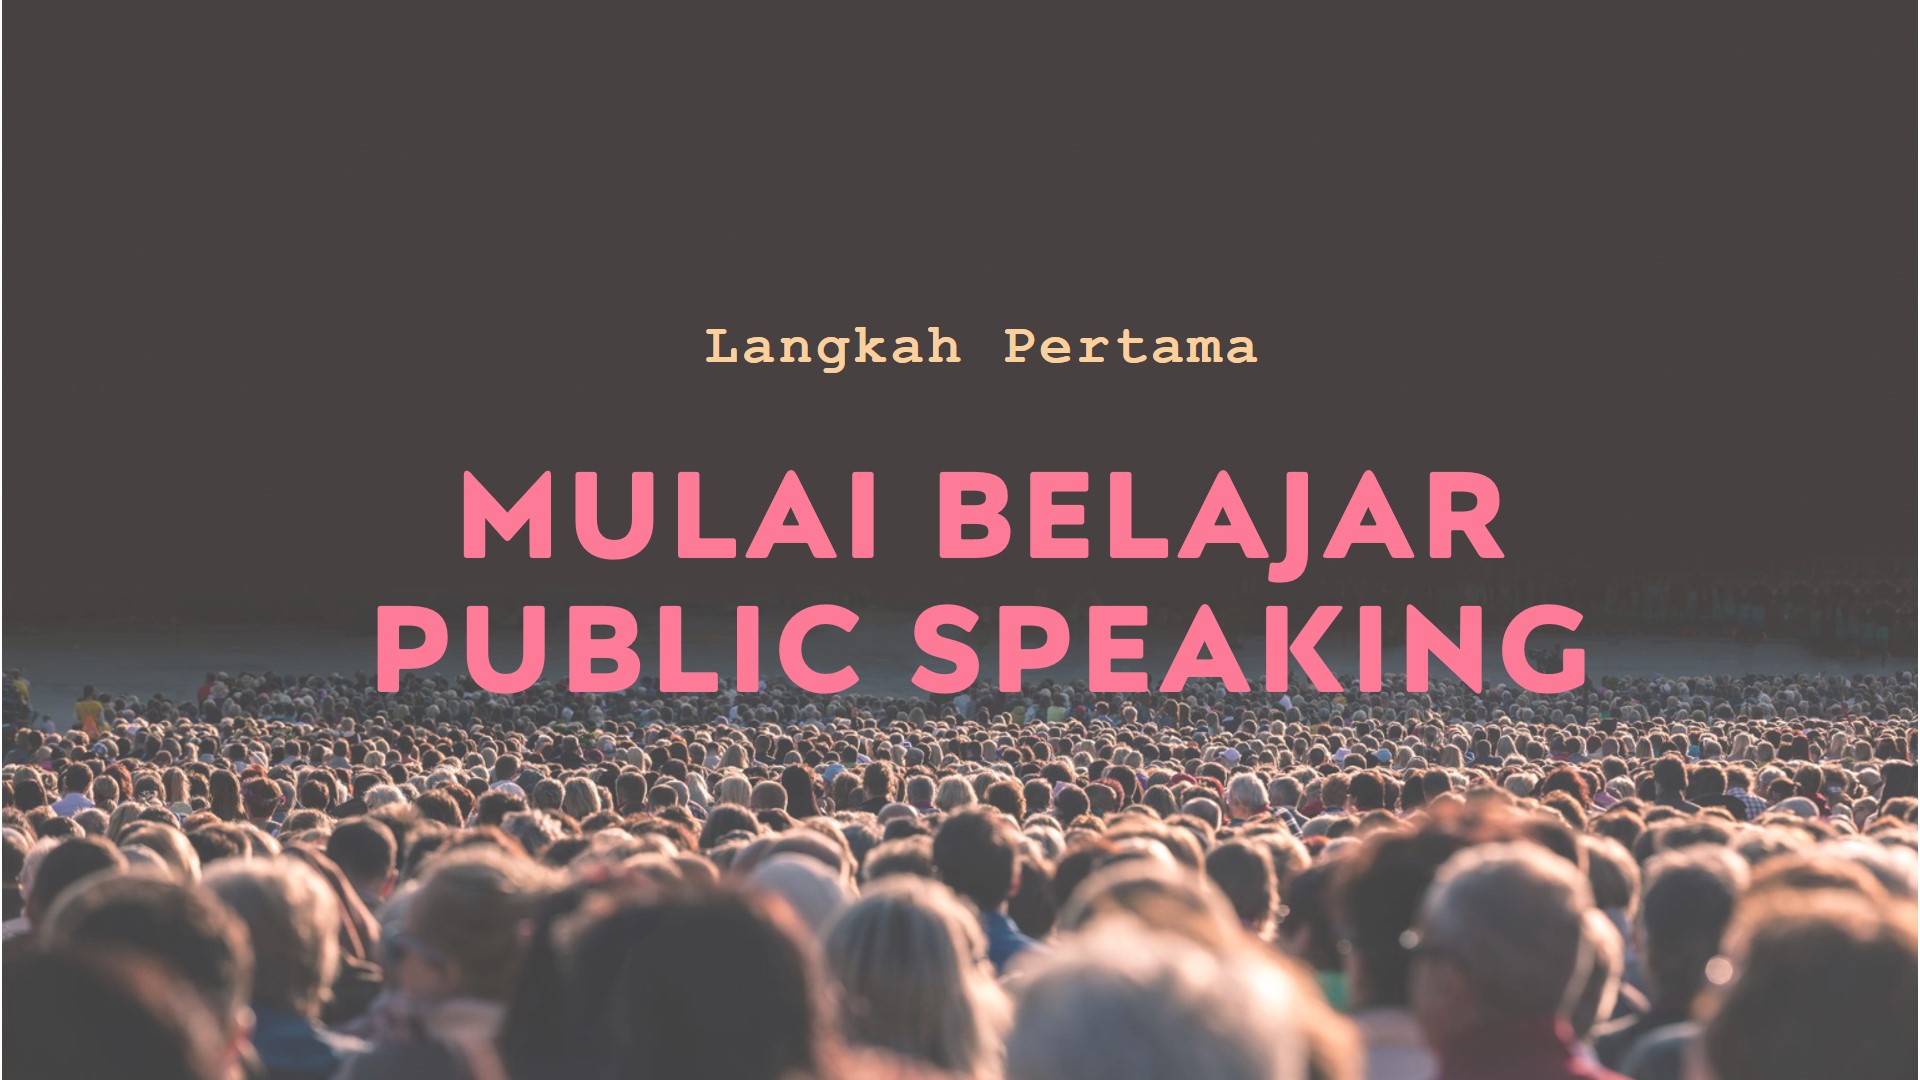 Langkah Pertama untuk Memulai Belajar Public Speaking